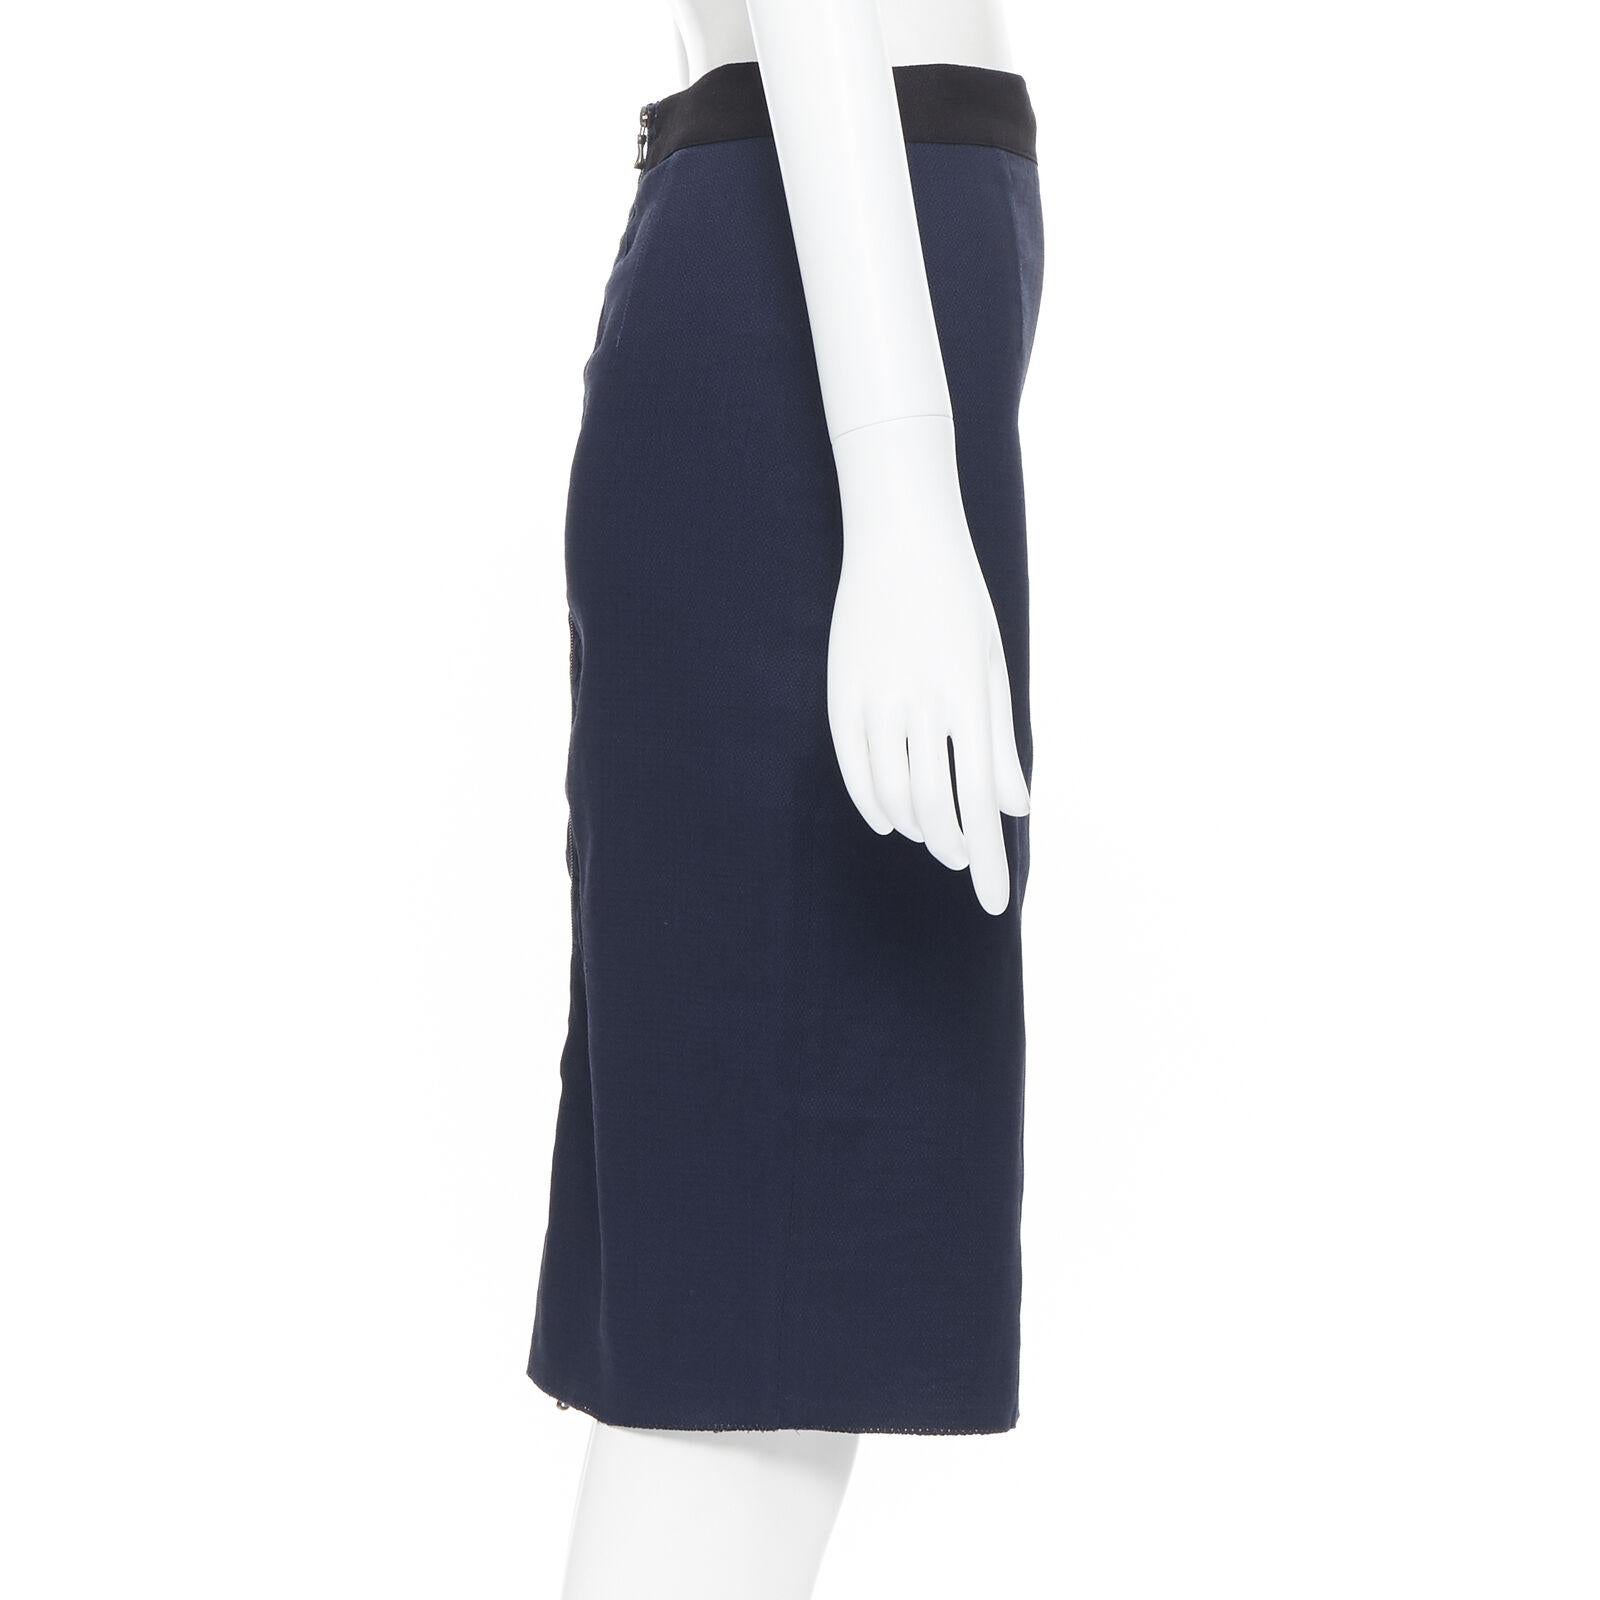 Women's LANVIN ALBER ELBAZ 2014 navy blue linen blend exposed zip pencil skirt FR34 26